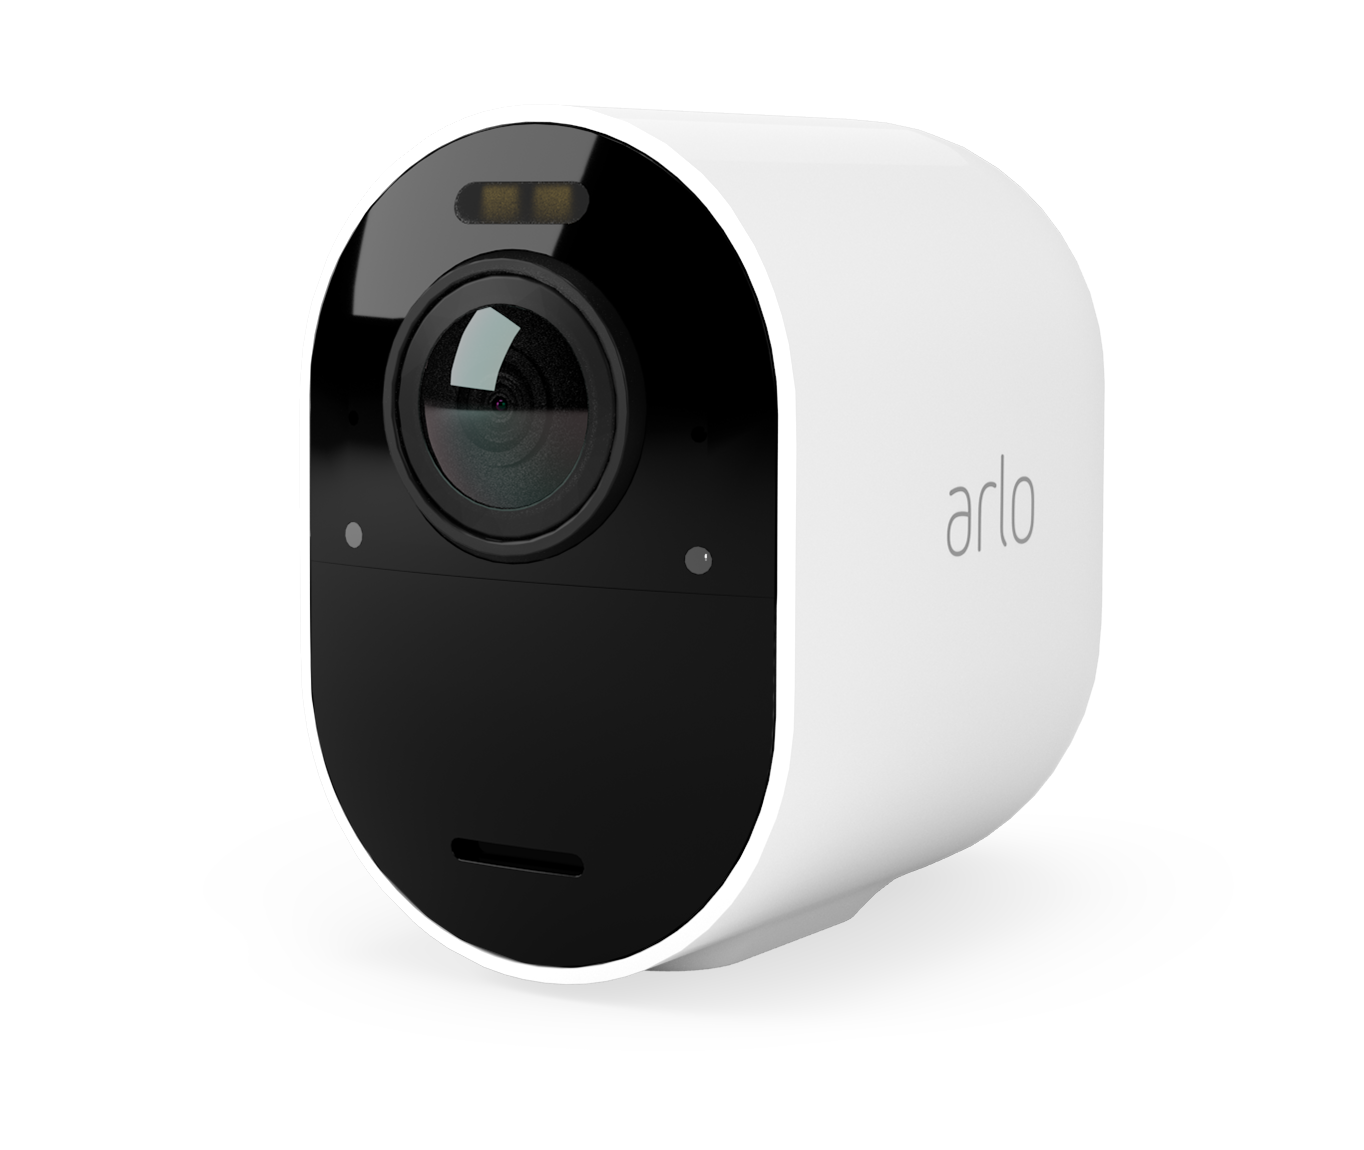 A white arlo camera